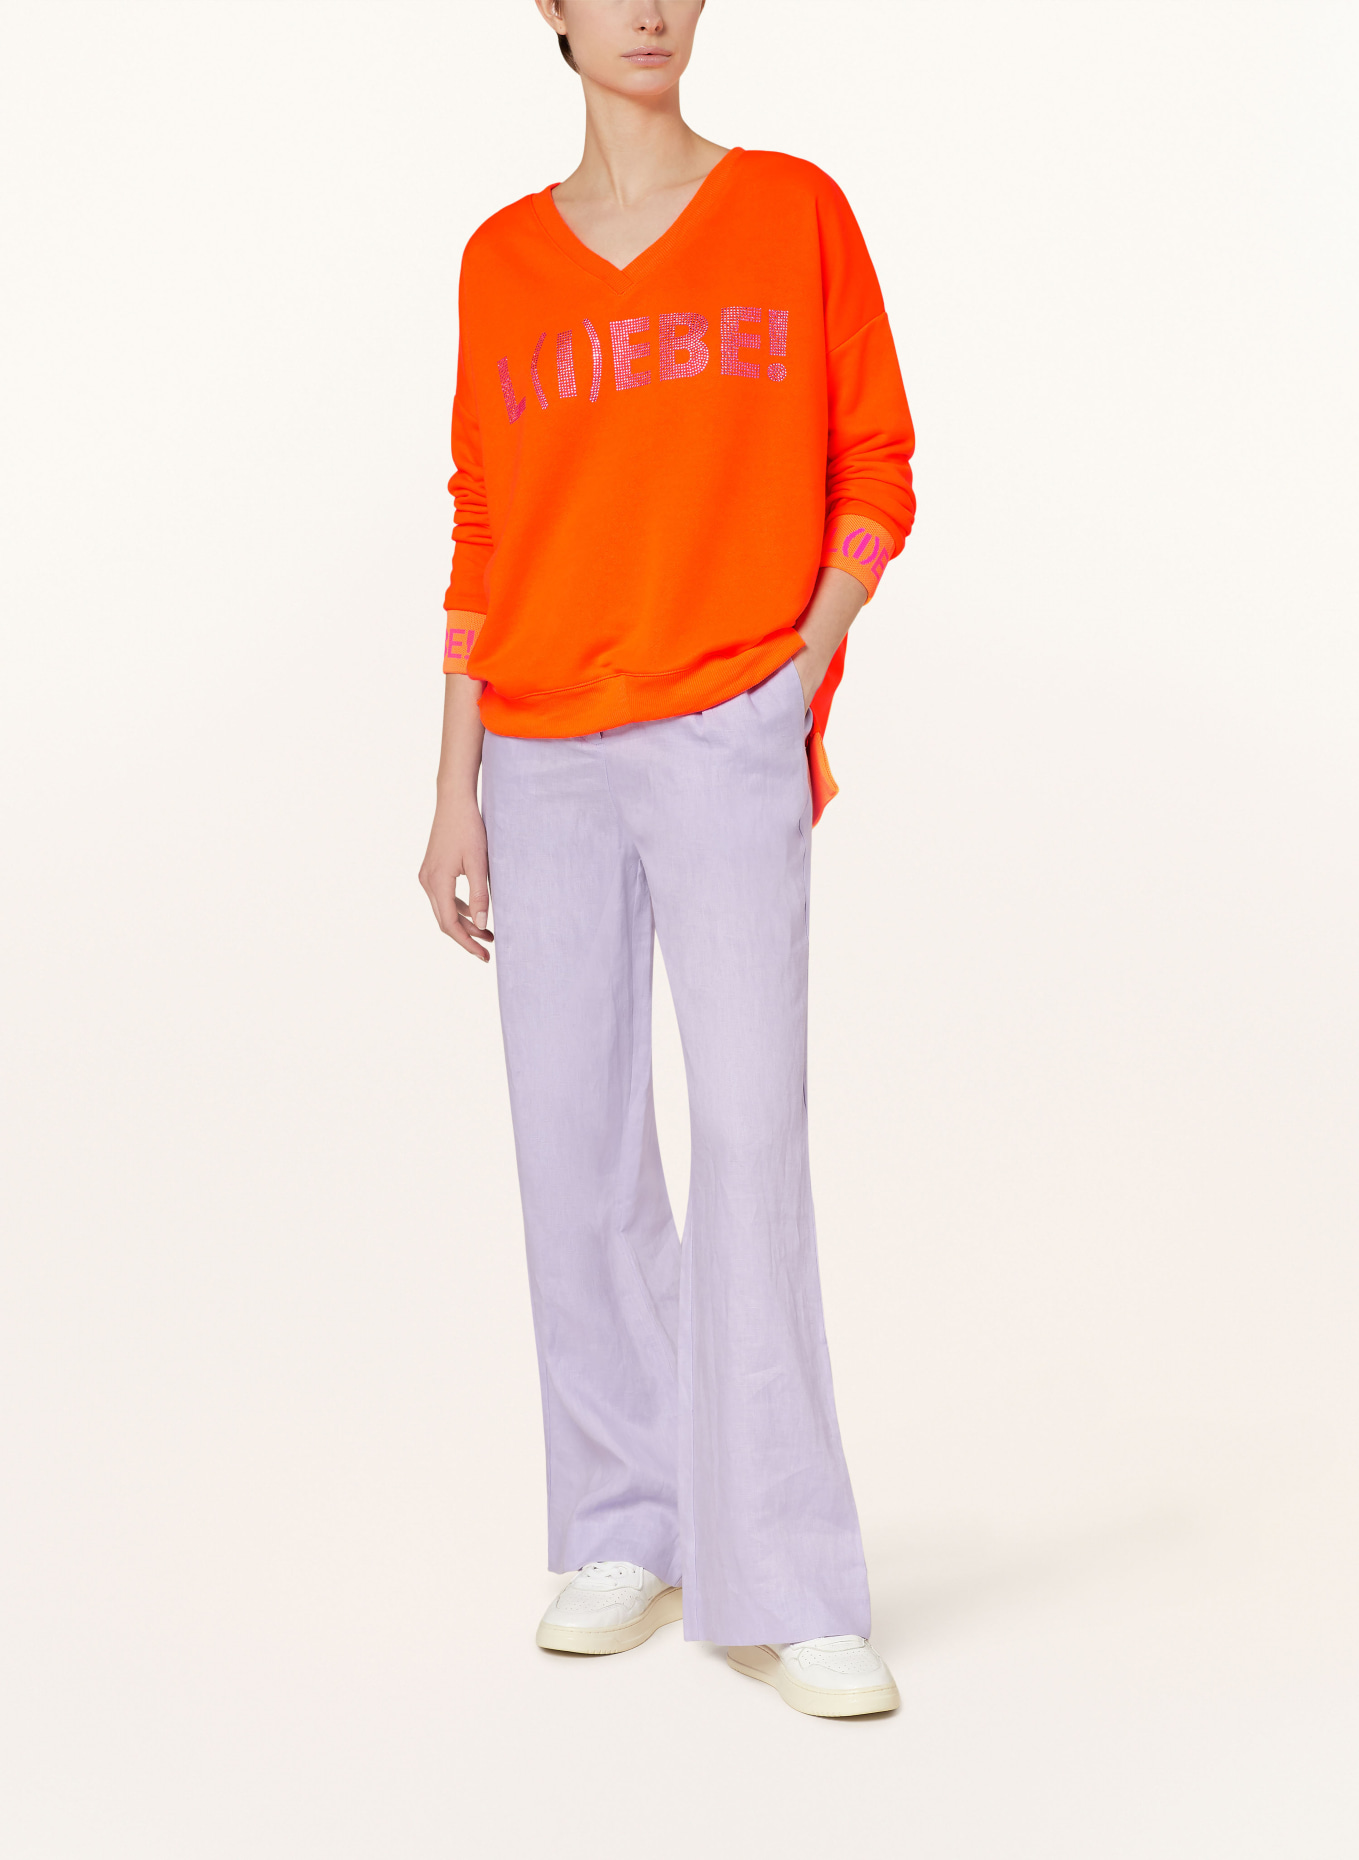 miss goodlife Sweatshirt mit Schmucksteinen, Farbe: NEONORANGE/ NEONPINK (Bild 2)